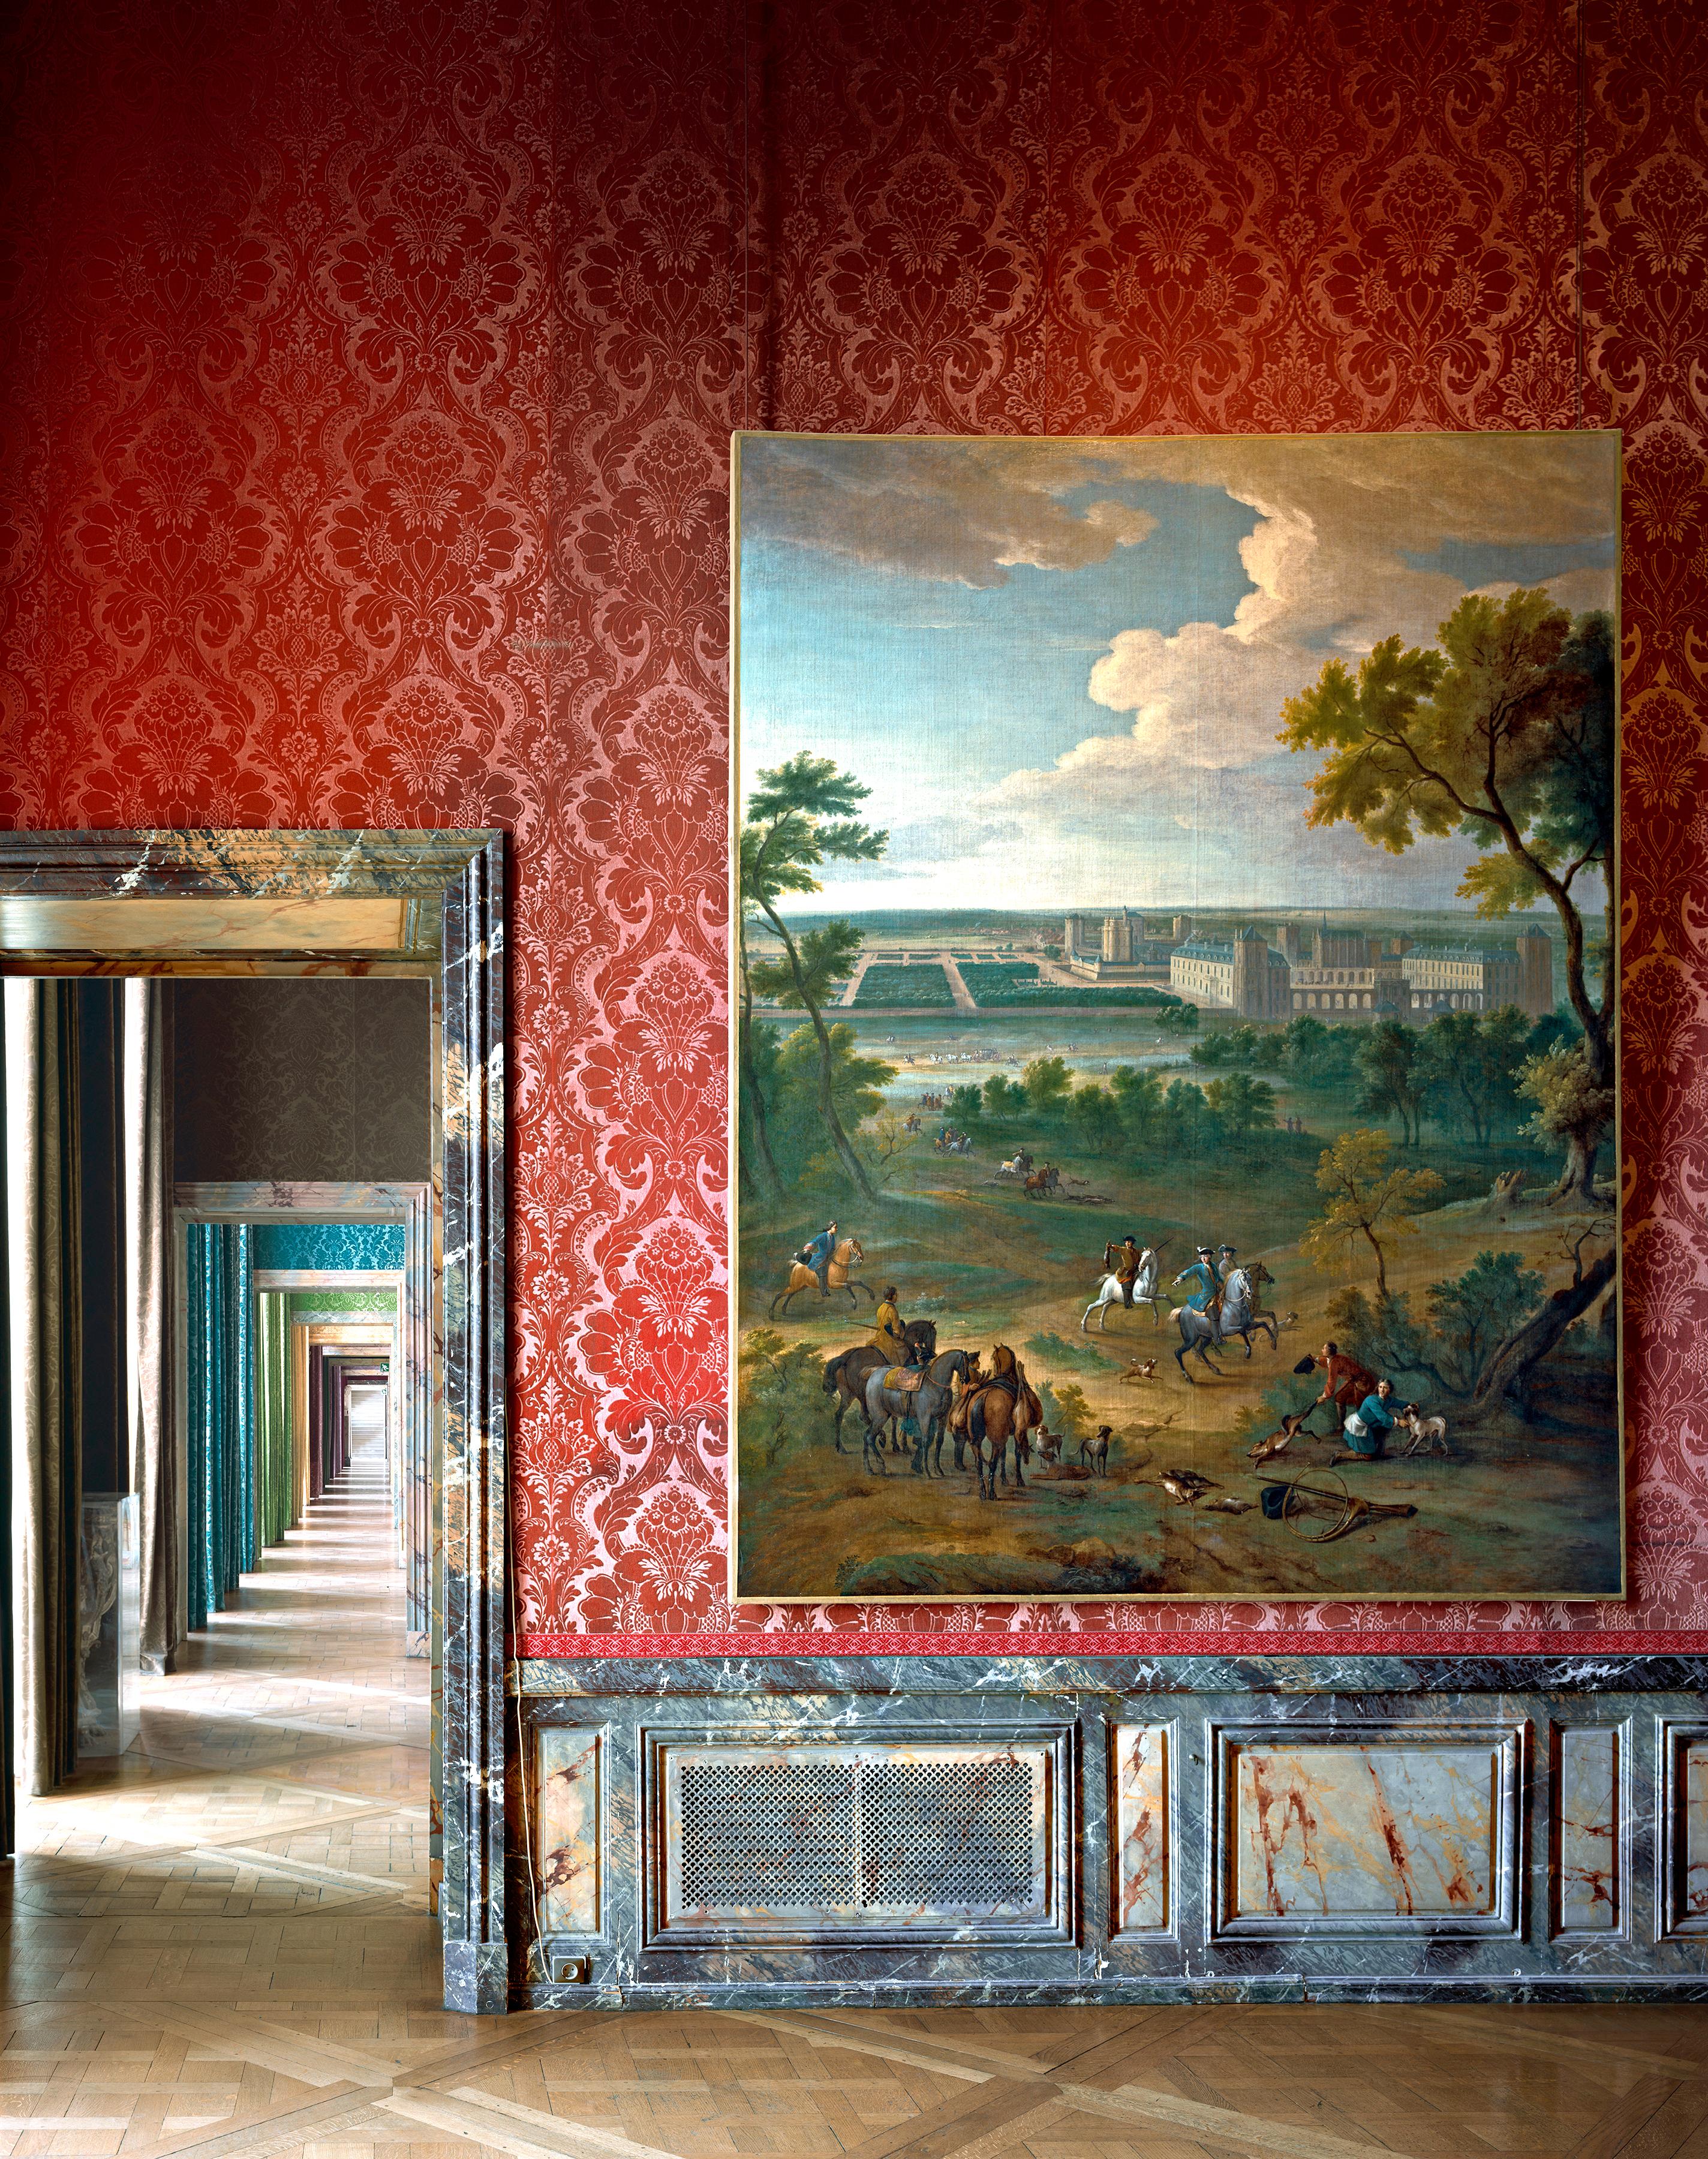 Salles du XVII, Château de Versailles,  France - Photograph by Robert Polidori